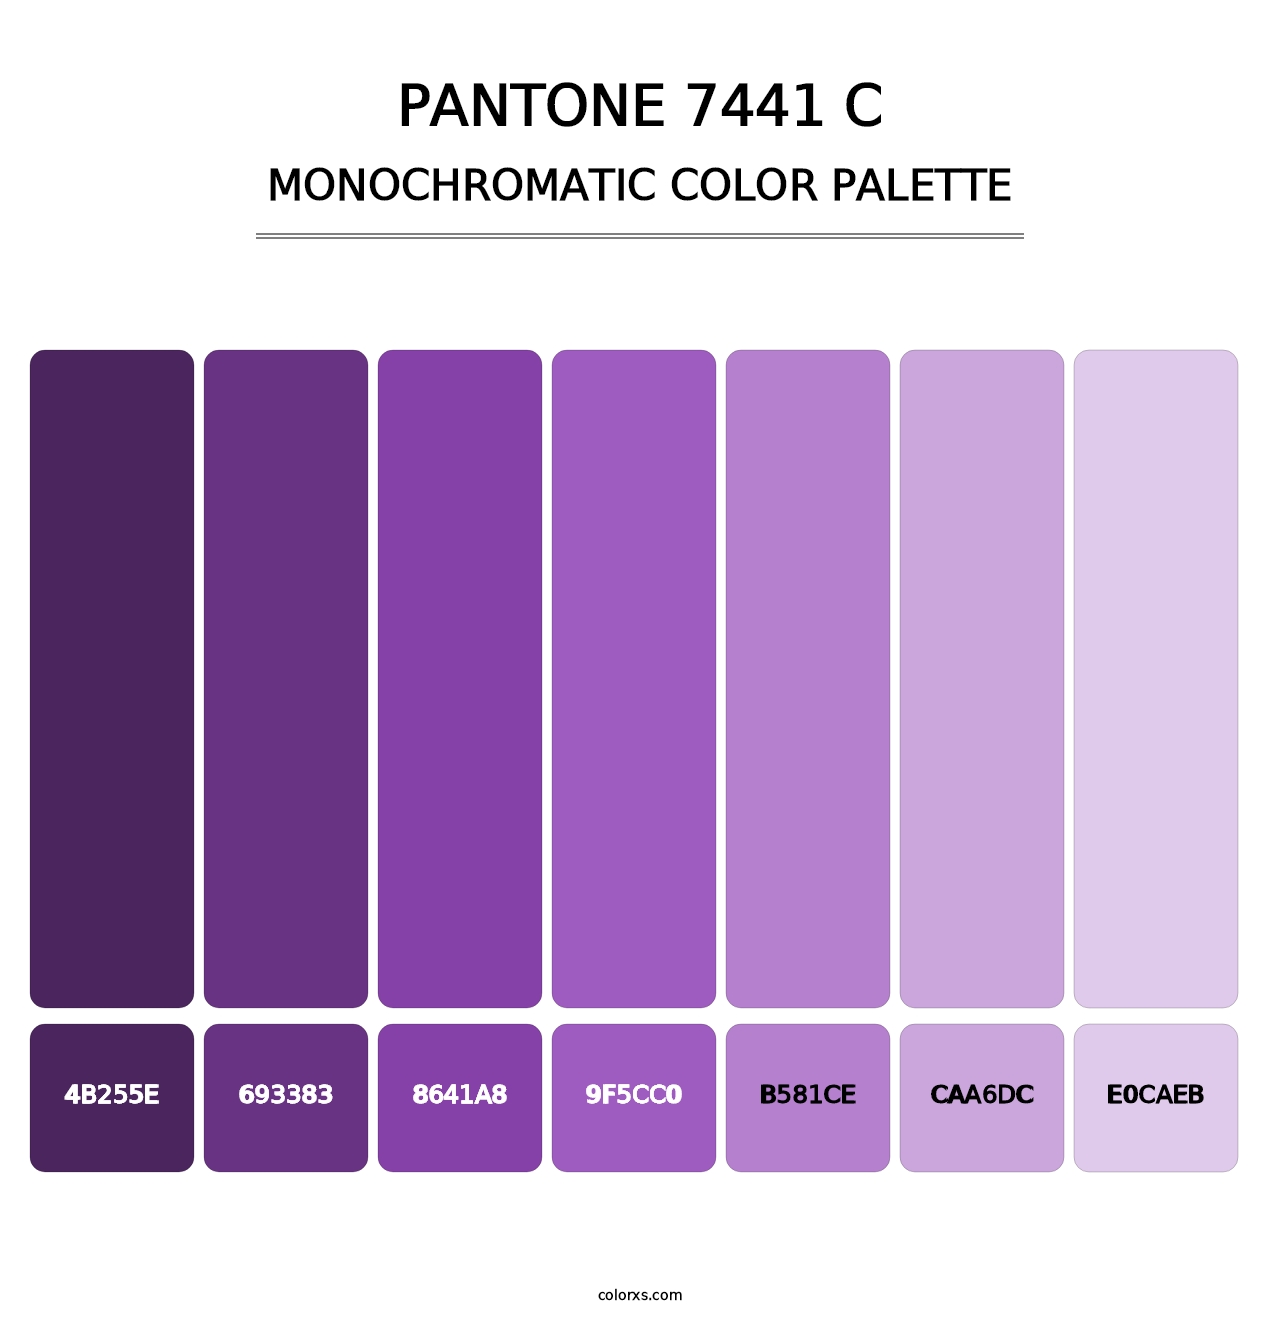 PANTONE 7441 C - Monochromatic Color Palette